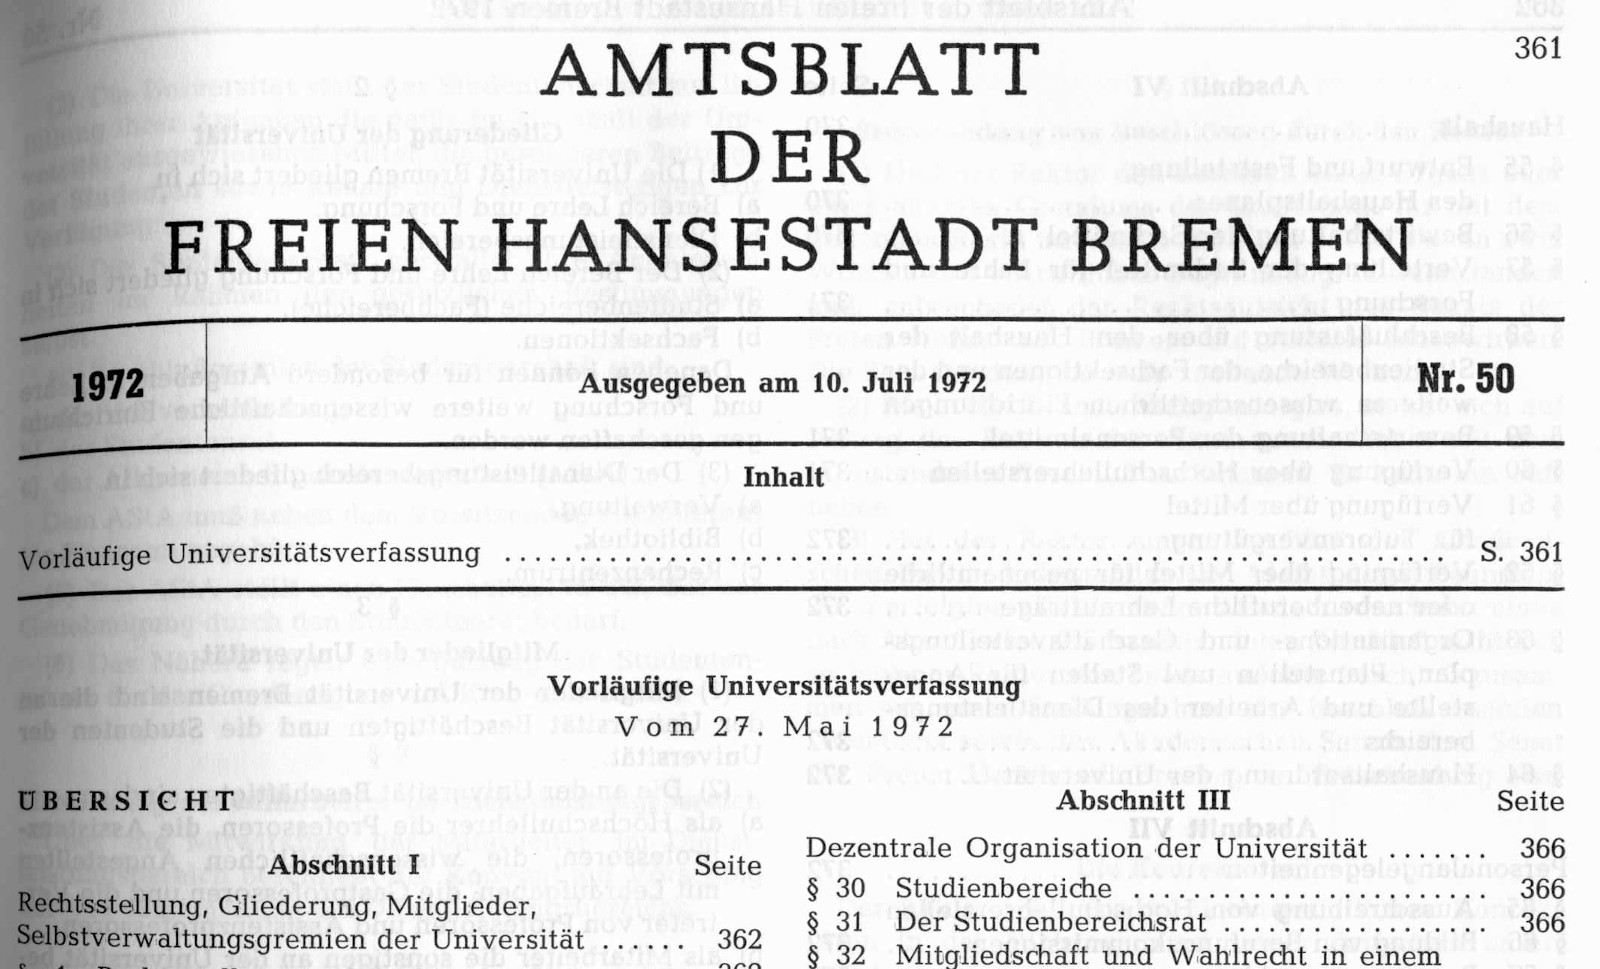 Auszug aus der Vorläufigen Universitätsverfassung vom 27.05.1972 aus dem Amtsblatt der Freien Hansestadt Bremen Nr. 50 vom 10. Juli 1972.